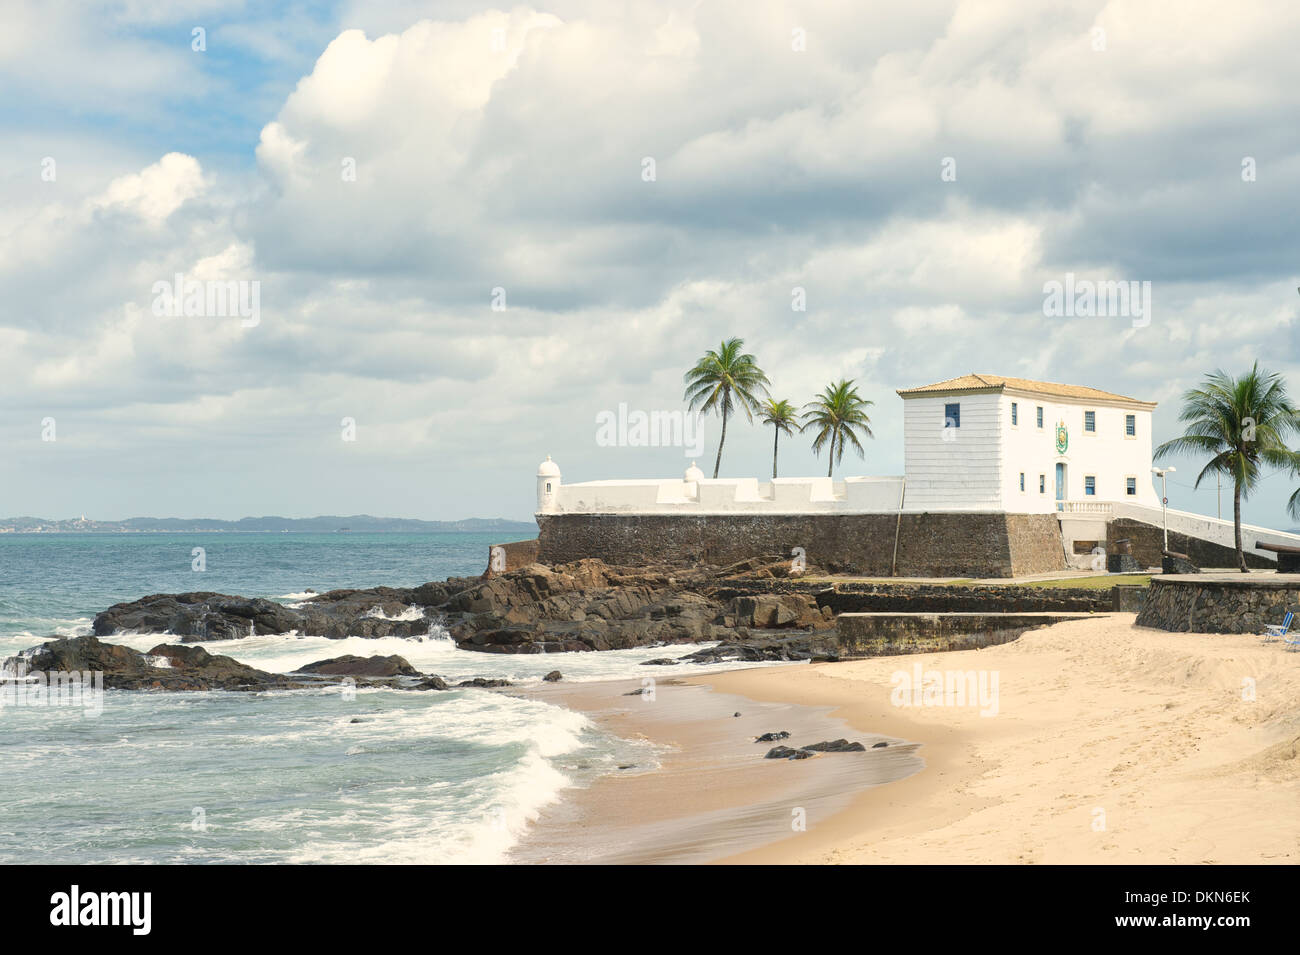 Fort de Santa Maria in Colonial Barra Salvador Brésil construit sur plage tropicale avec palmiers Banque D'Images